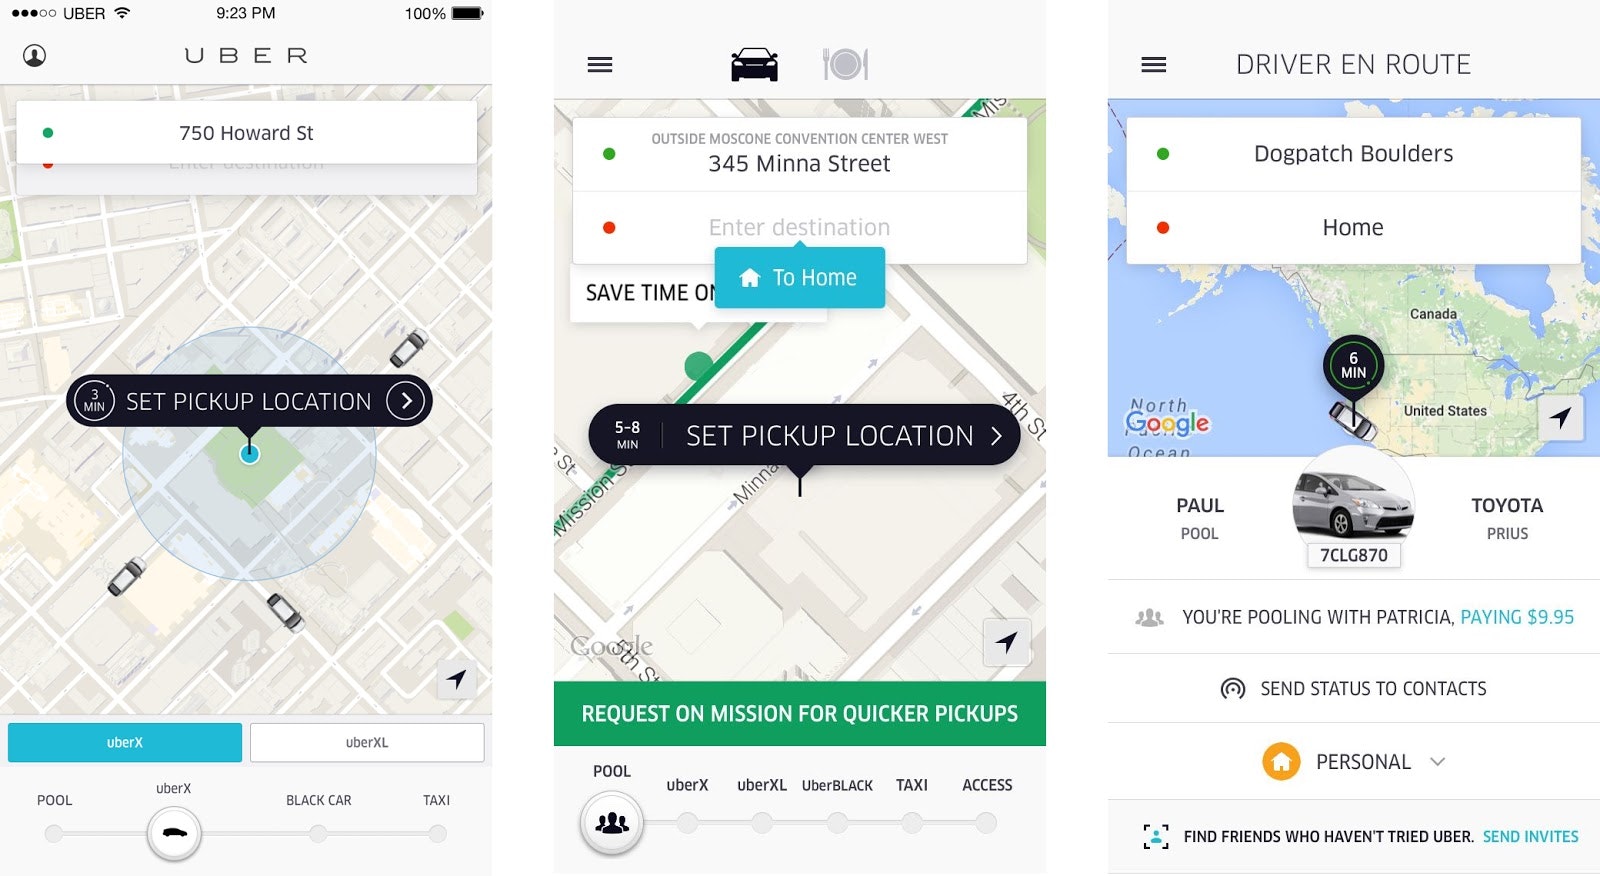 Thay đổi thiết kế ứng dụng Uber 2012-2016